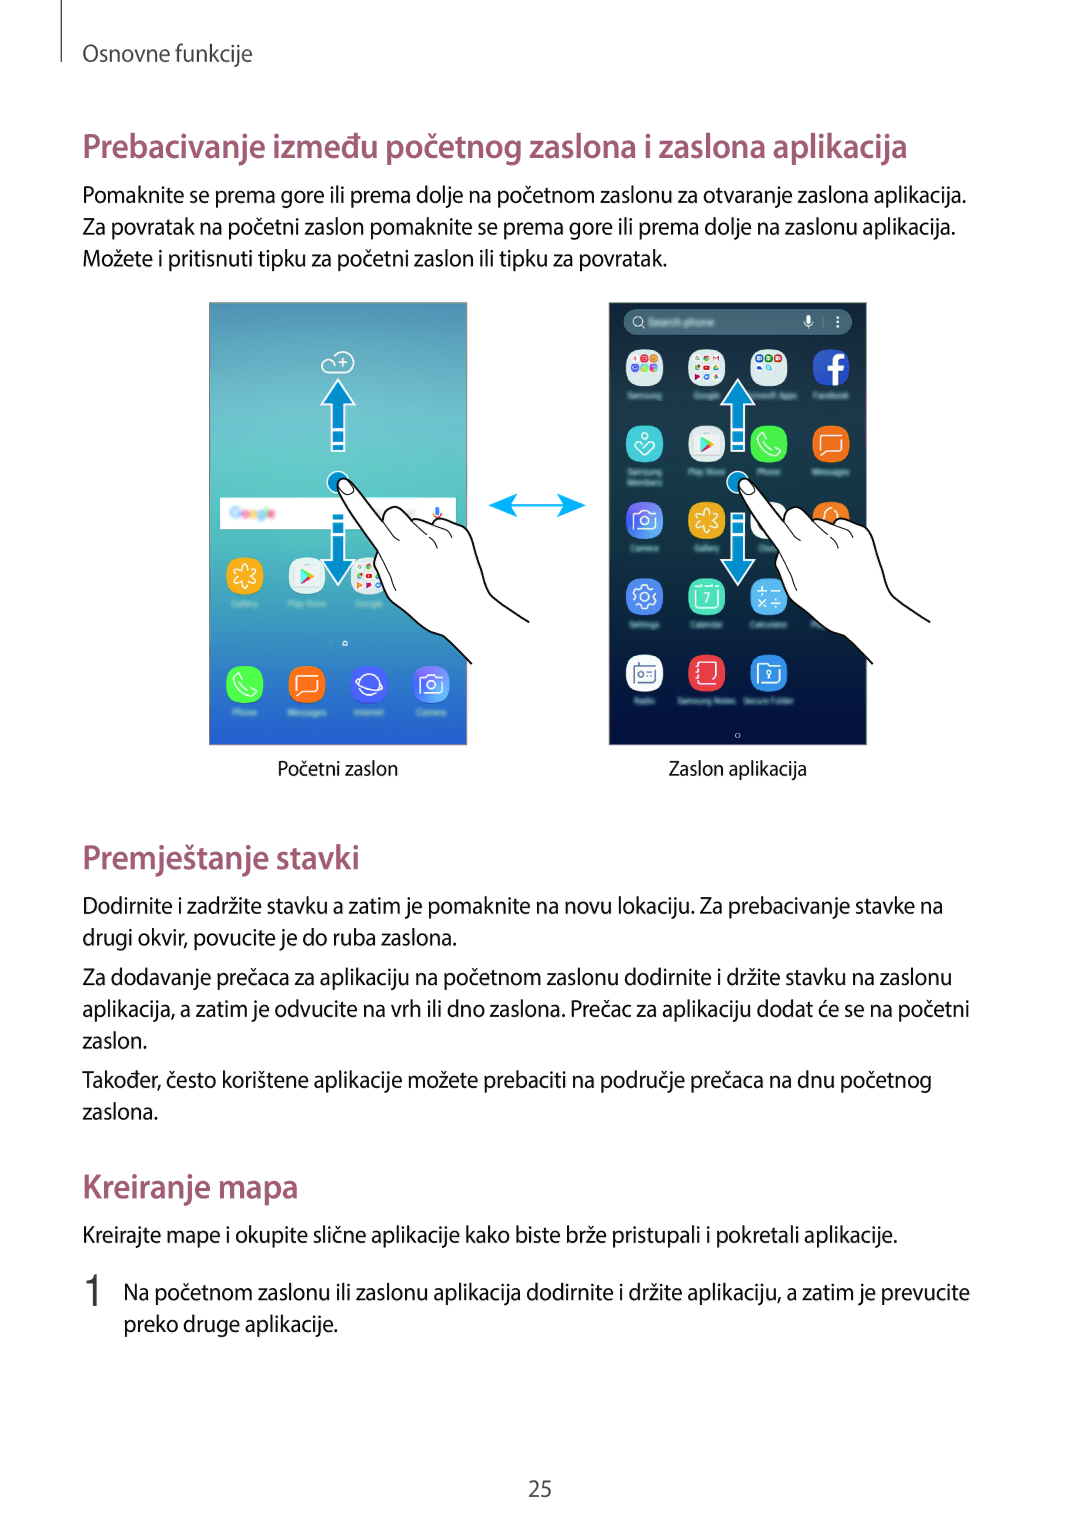 Samsung SM-J330FZKNDHR Prebacivanje između početnog zaslona i zaslona aplikacija, Premještanje stavki, Kreiranje mapa 